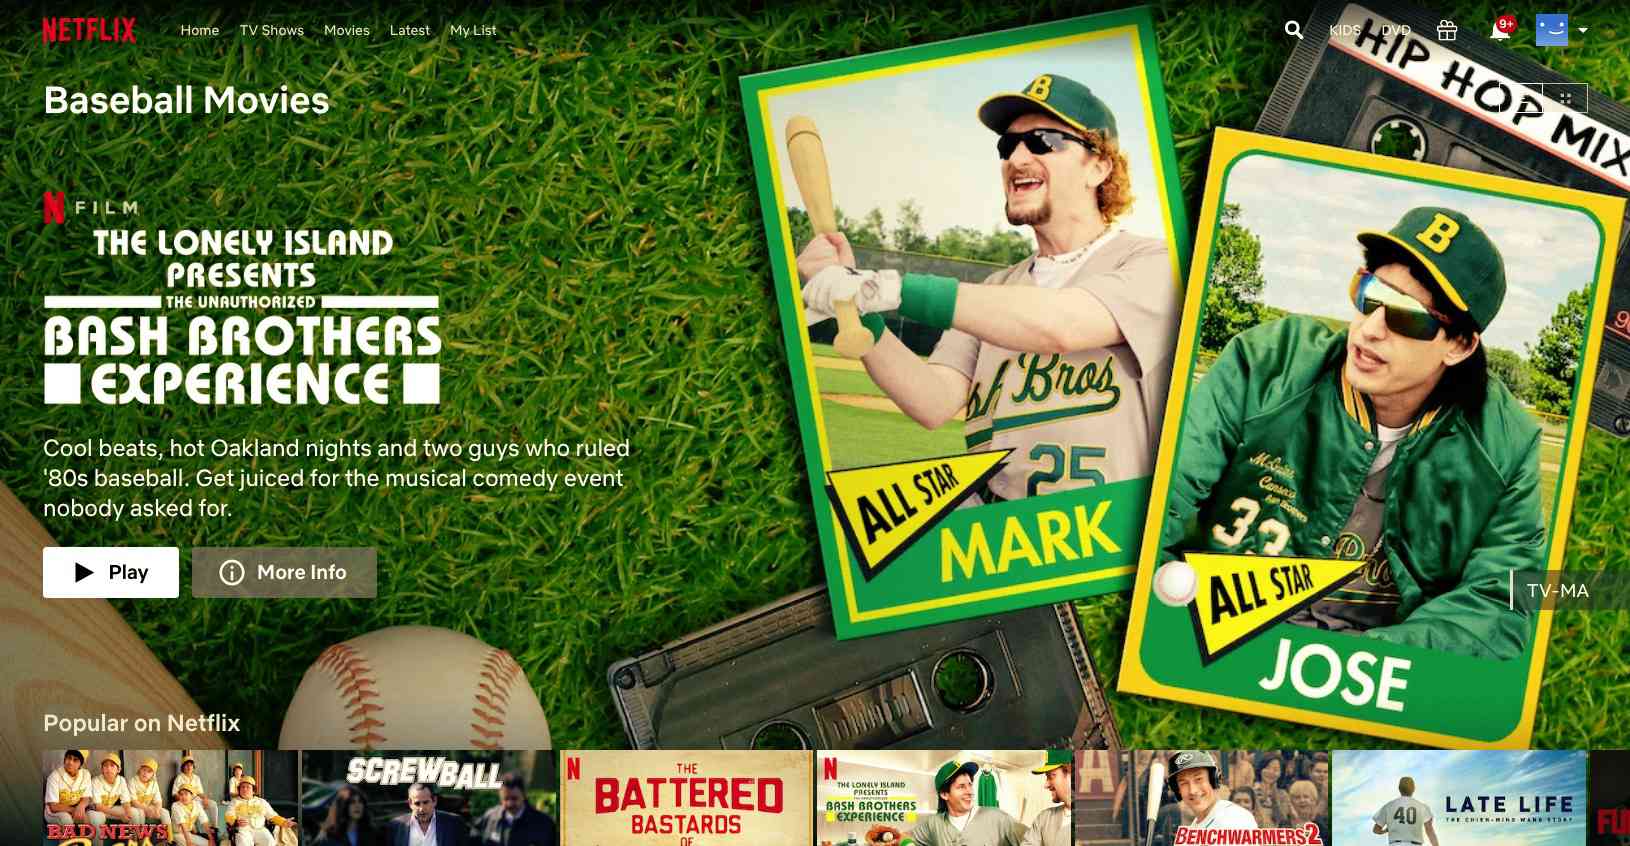 Baseball Movie Bash Brothers encontrado com códigos ocultos da Netflix